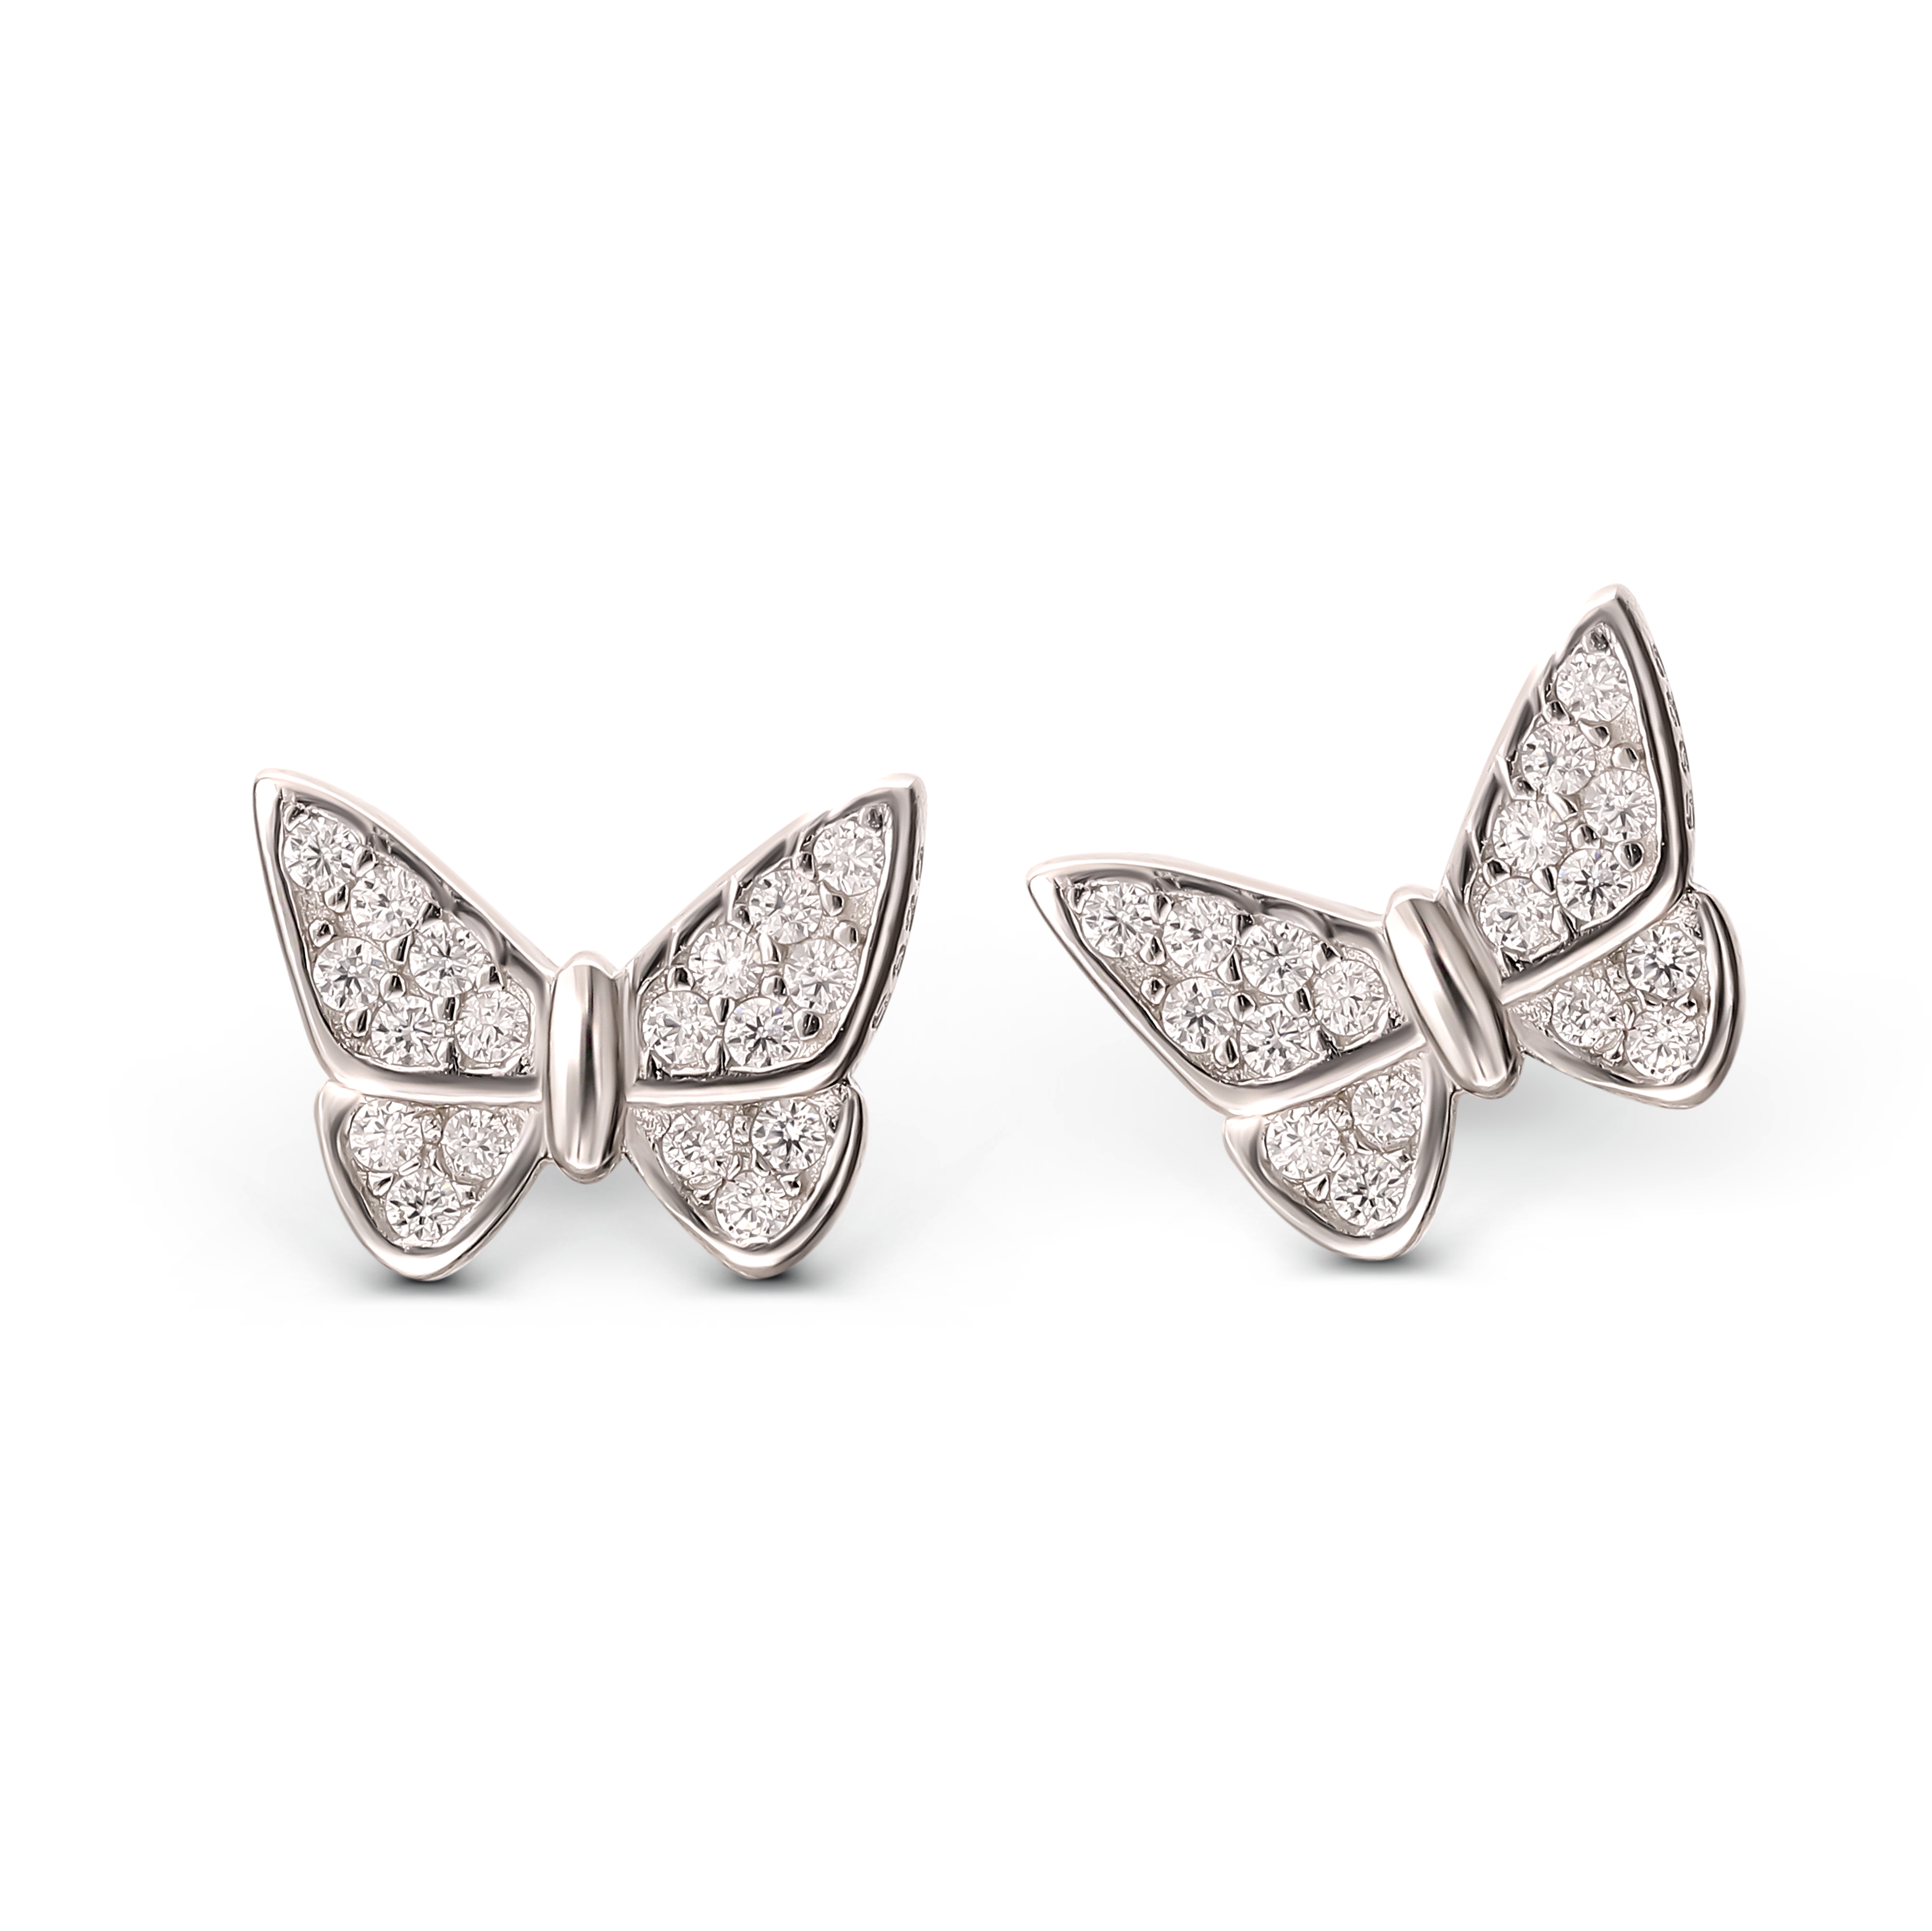 Kolczyki srebrne motyle z cyrkoniami, próba 925